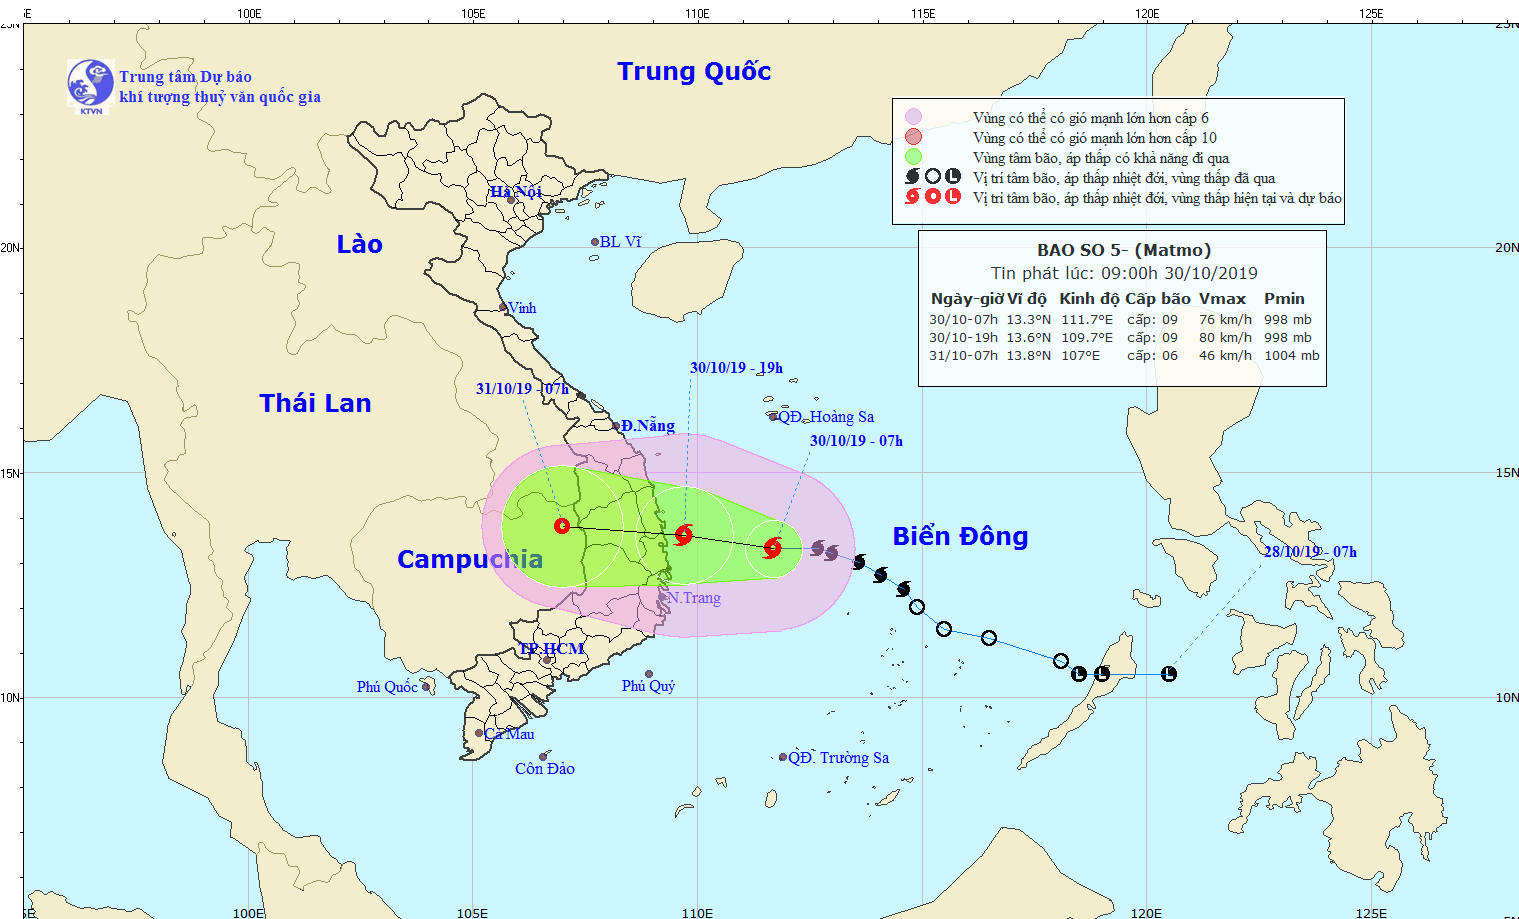 Cơn bão số 5 sẽ đổ bộ vùng biển Quảng Ngãi - Ninh Thuận trong hôm nay